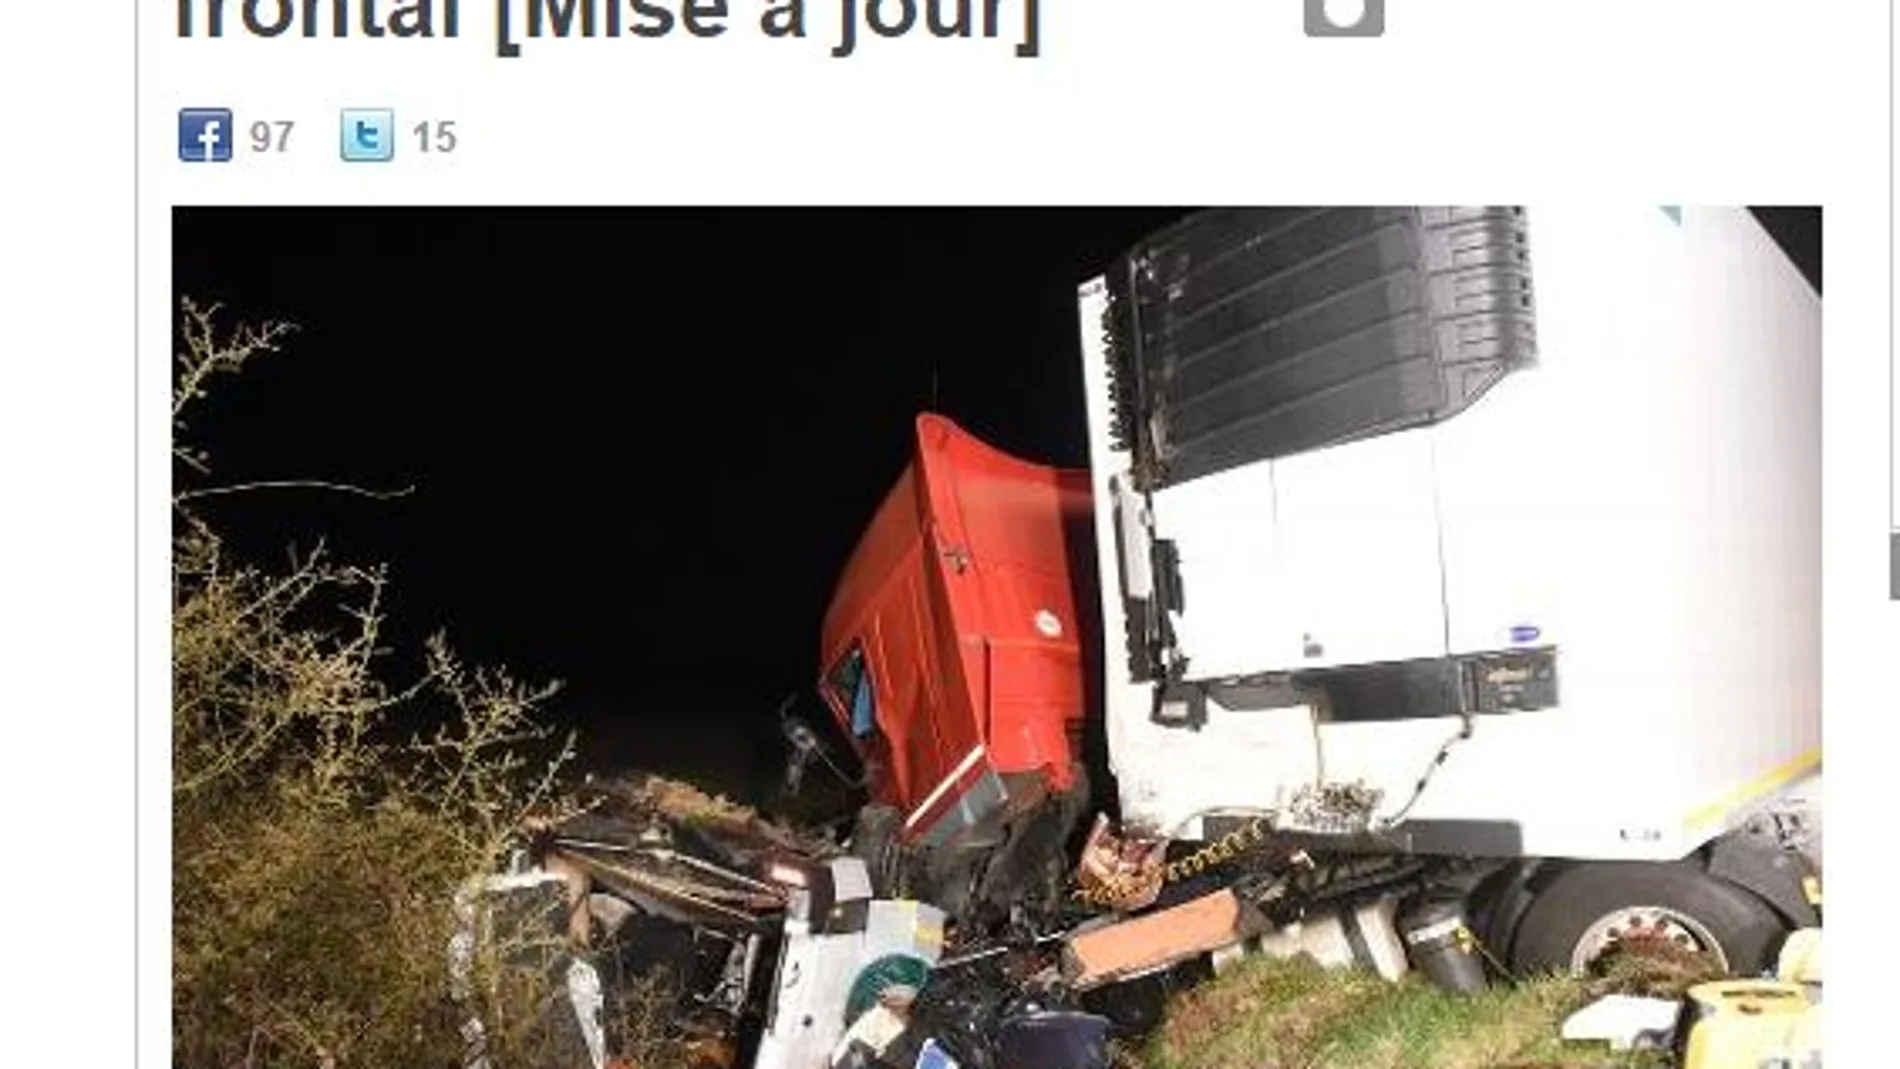 el diario regional La Montagne ha publicado fotos del accidente en su página web